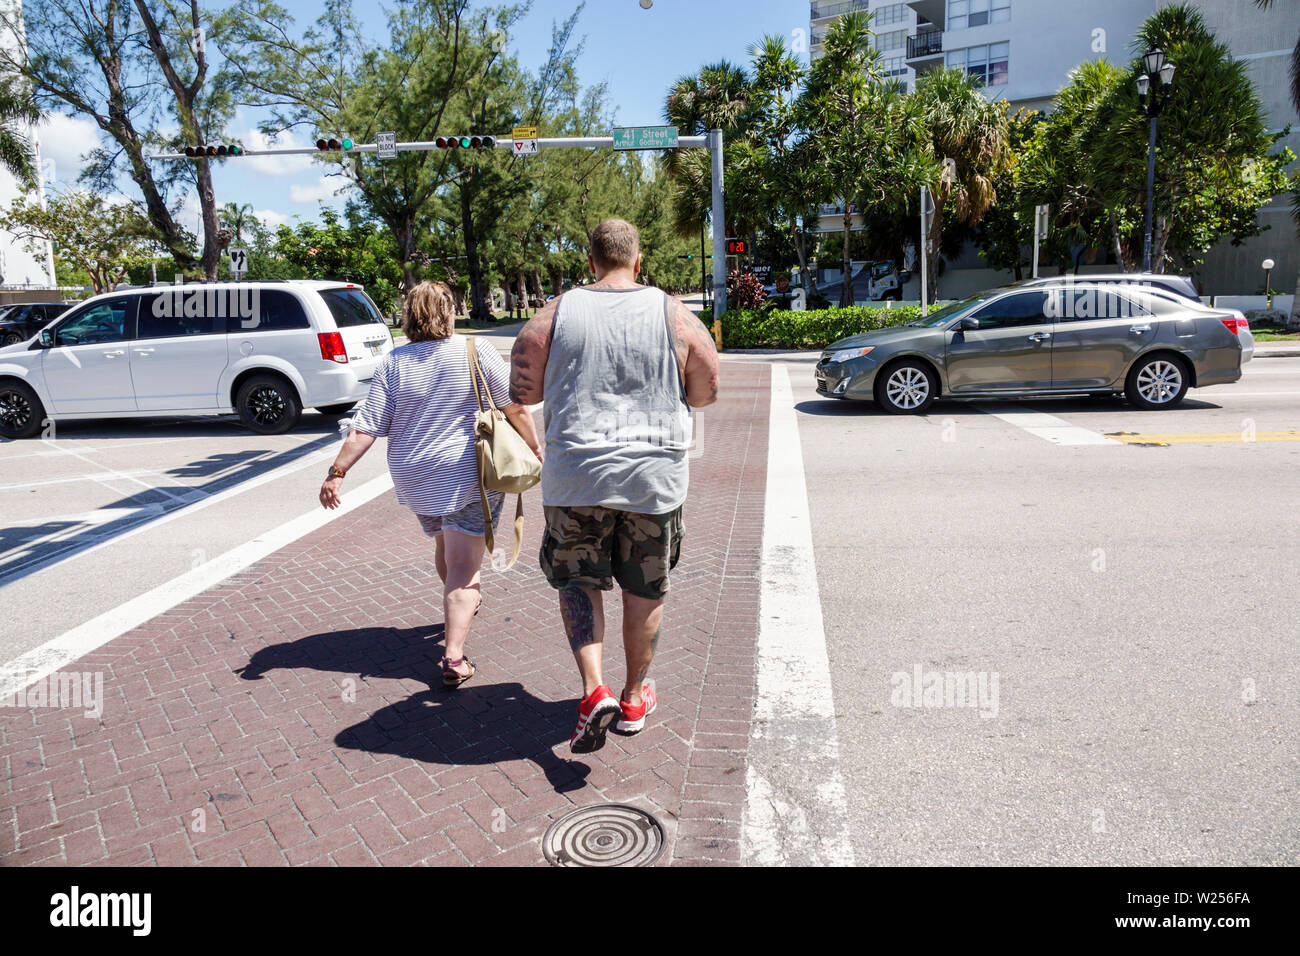 Miami Beach Florida, sovrappeso obese obesità grasso plump pesante stout rotund, grasso, coppia, adulti uomo uomini uomini maschio, donna donna donna donna donna donna donna donna donna donna donna donna, pedestr Foto Stock